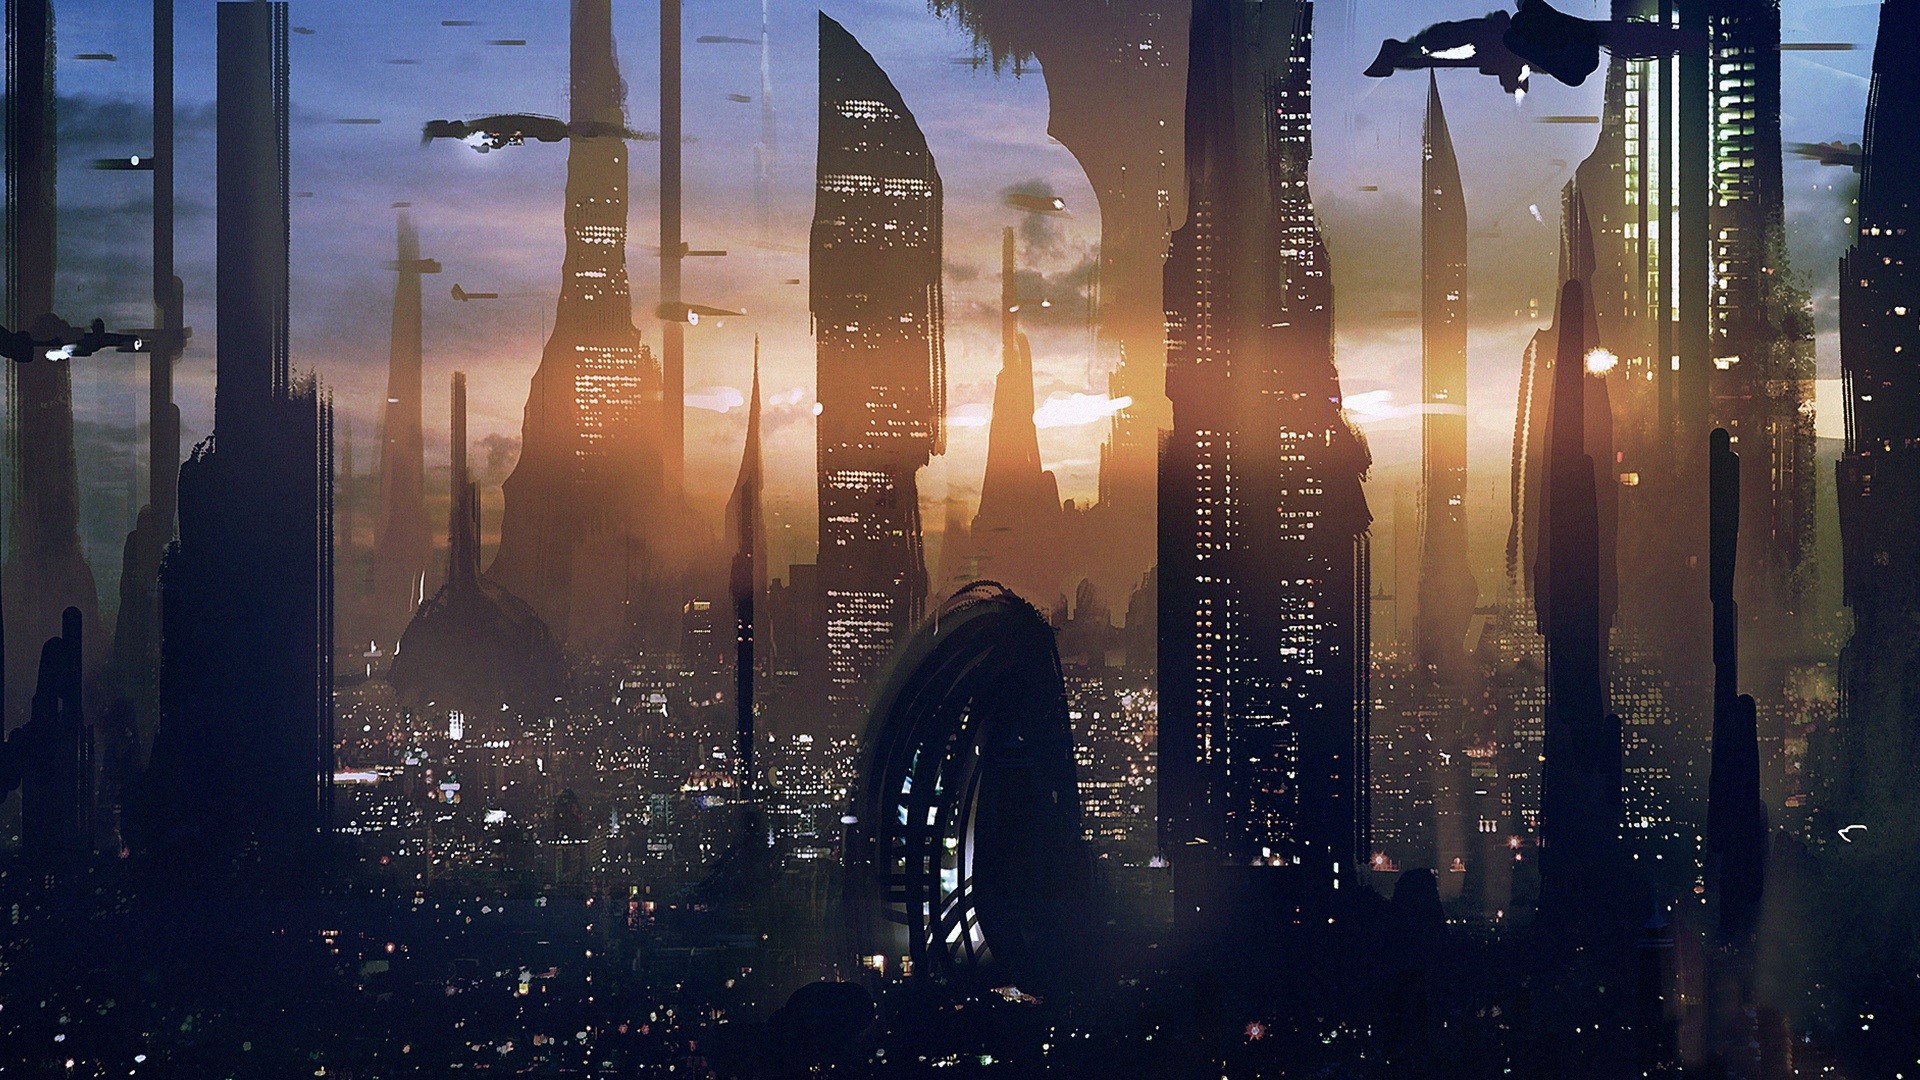 1920x1080 Star Wars, skyscraper, future city wallpaper  Full HD